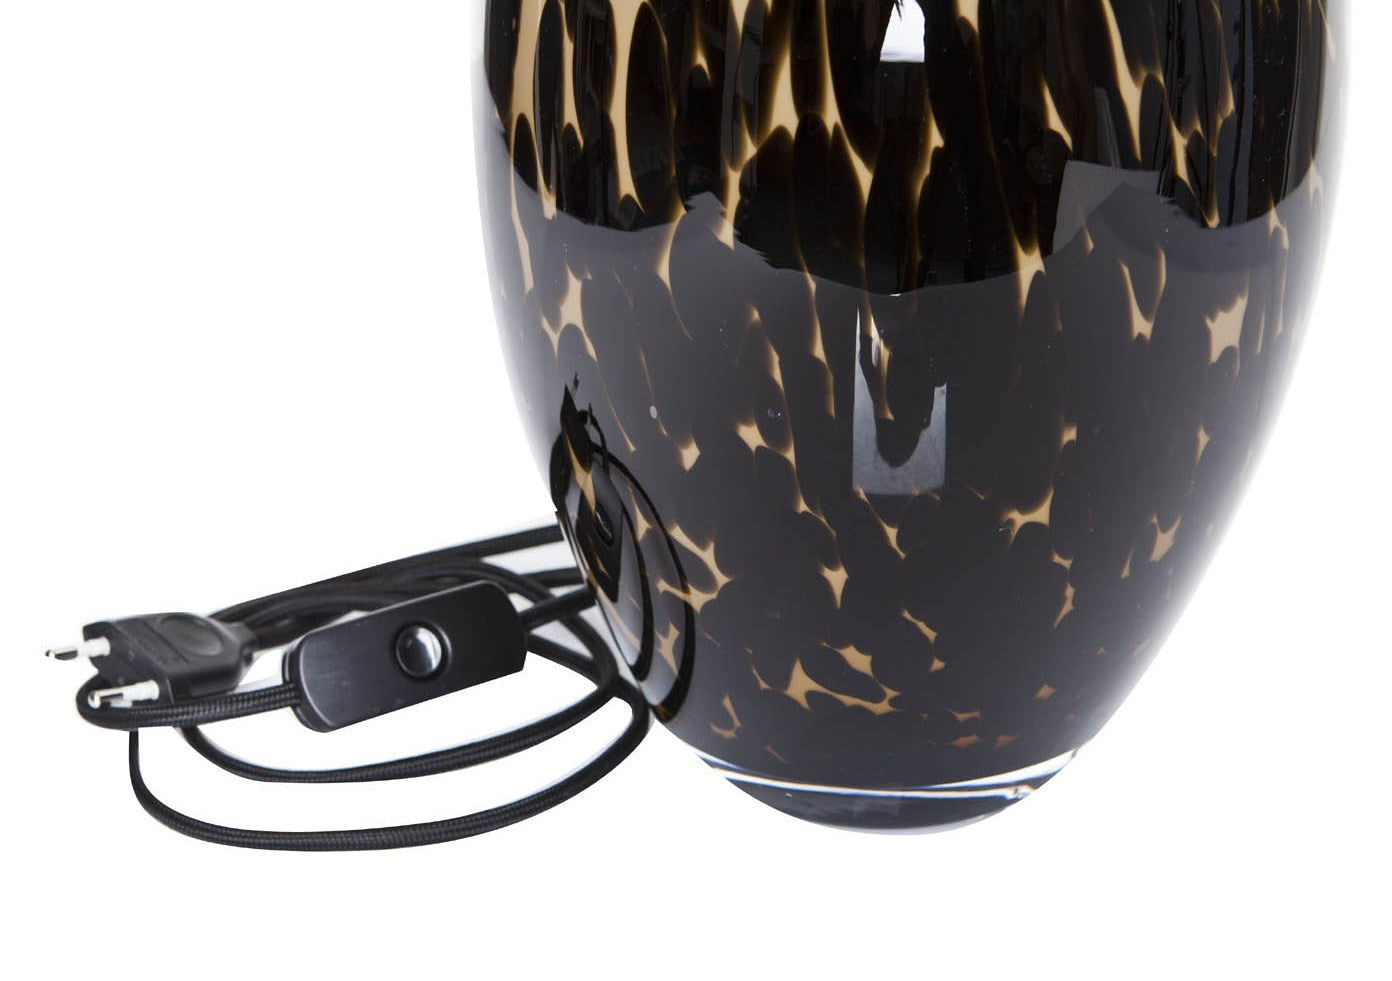 Glaslampe braun handgemacht mit schwarzem Kabel als Tischlampe zur Wohnzimmerbeleuchtung